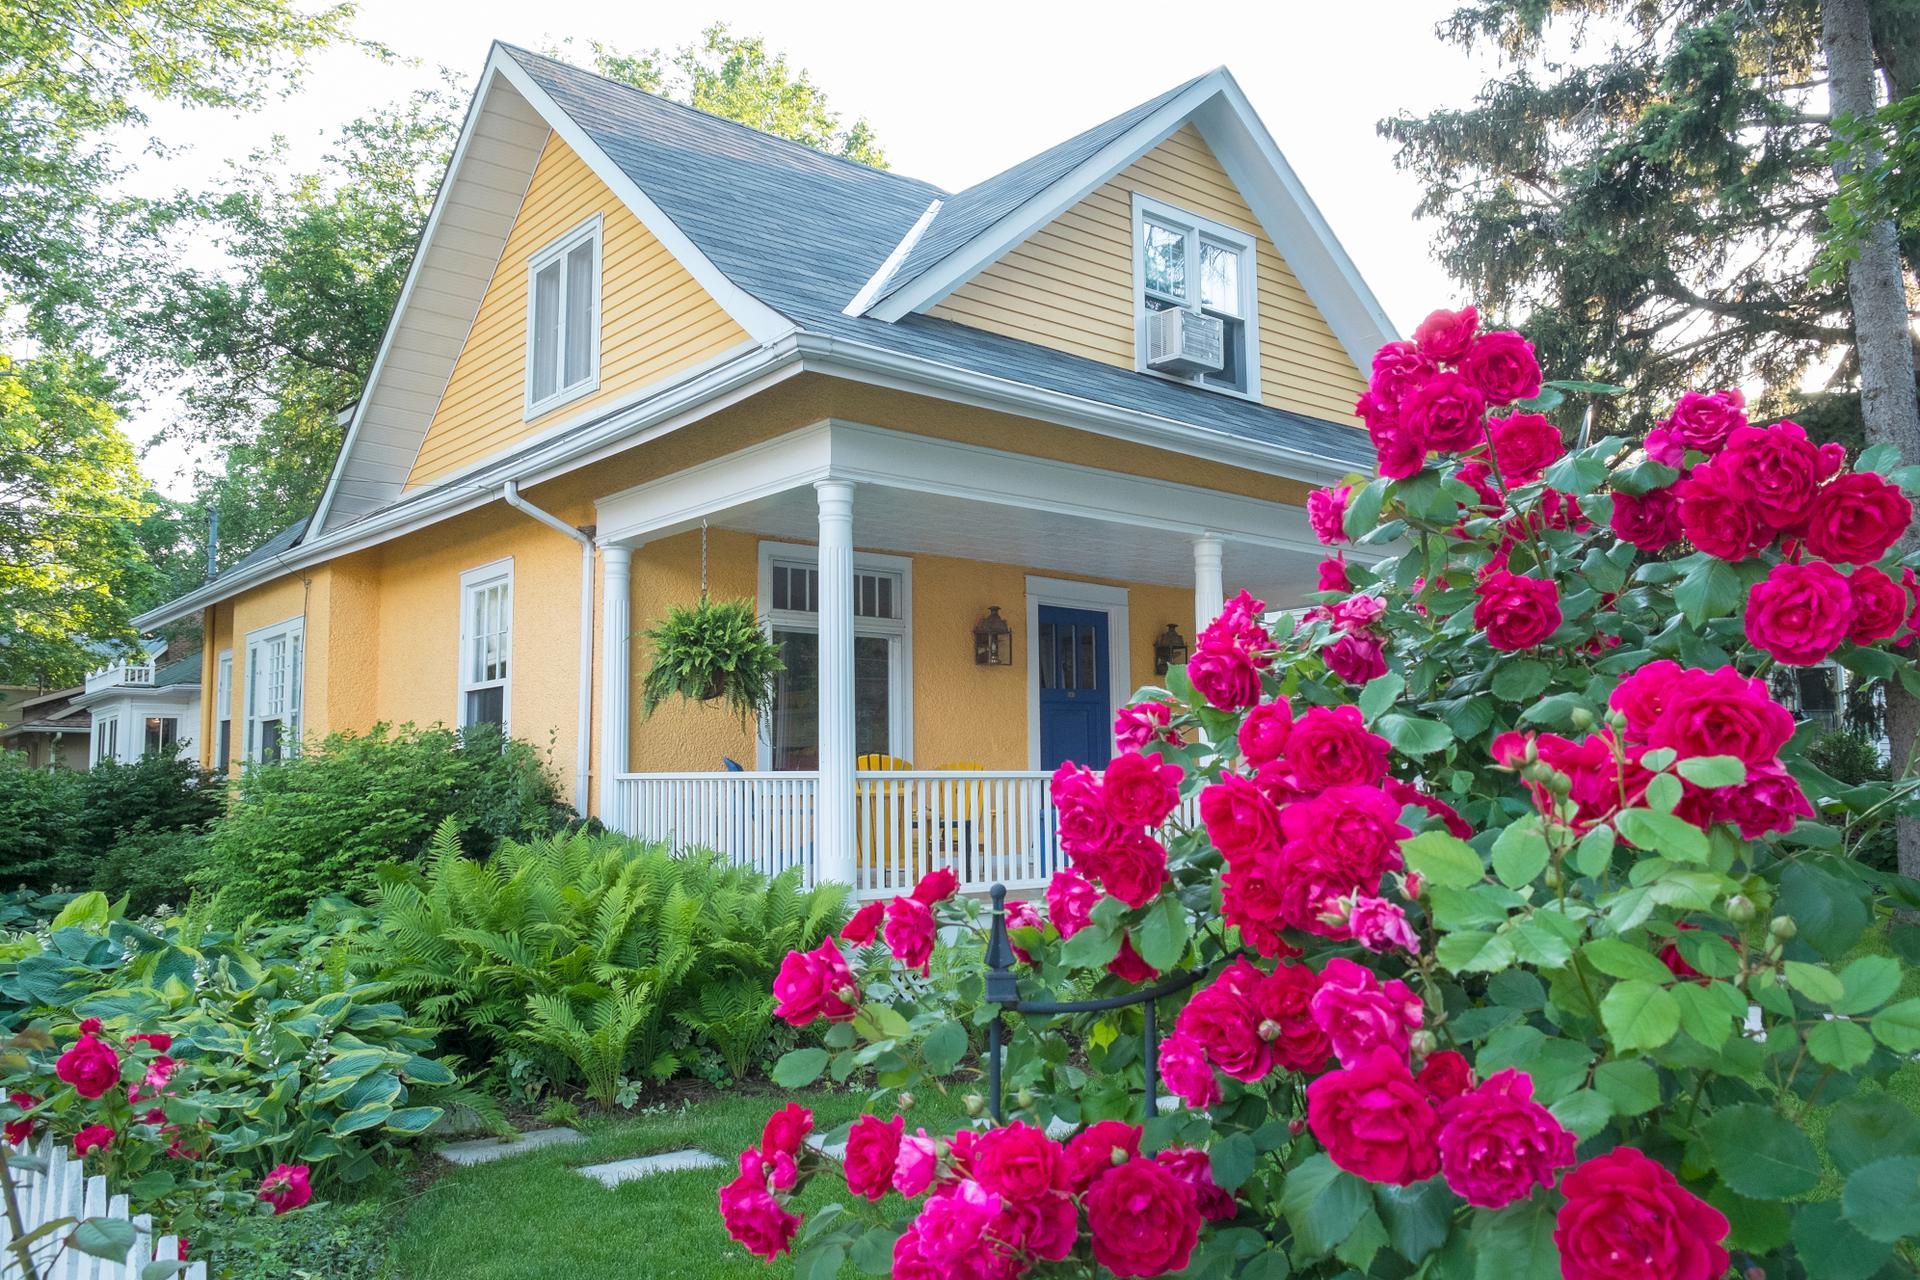 Дом с цветами розовый. Клумба Бабушкин палисадник. Розарий в палисаднике. Красивый домик с садом. Цветы перед домом в деревне.